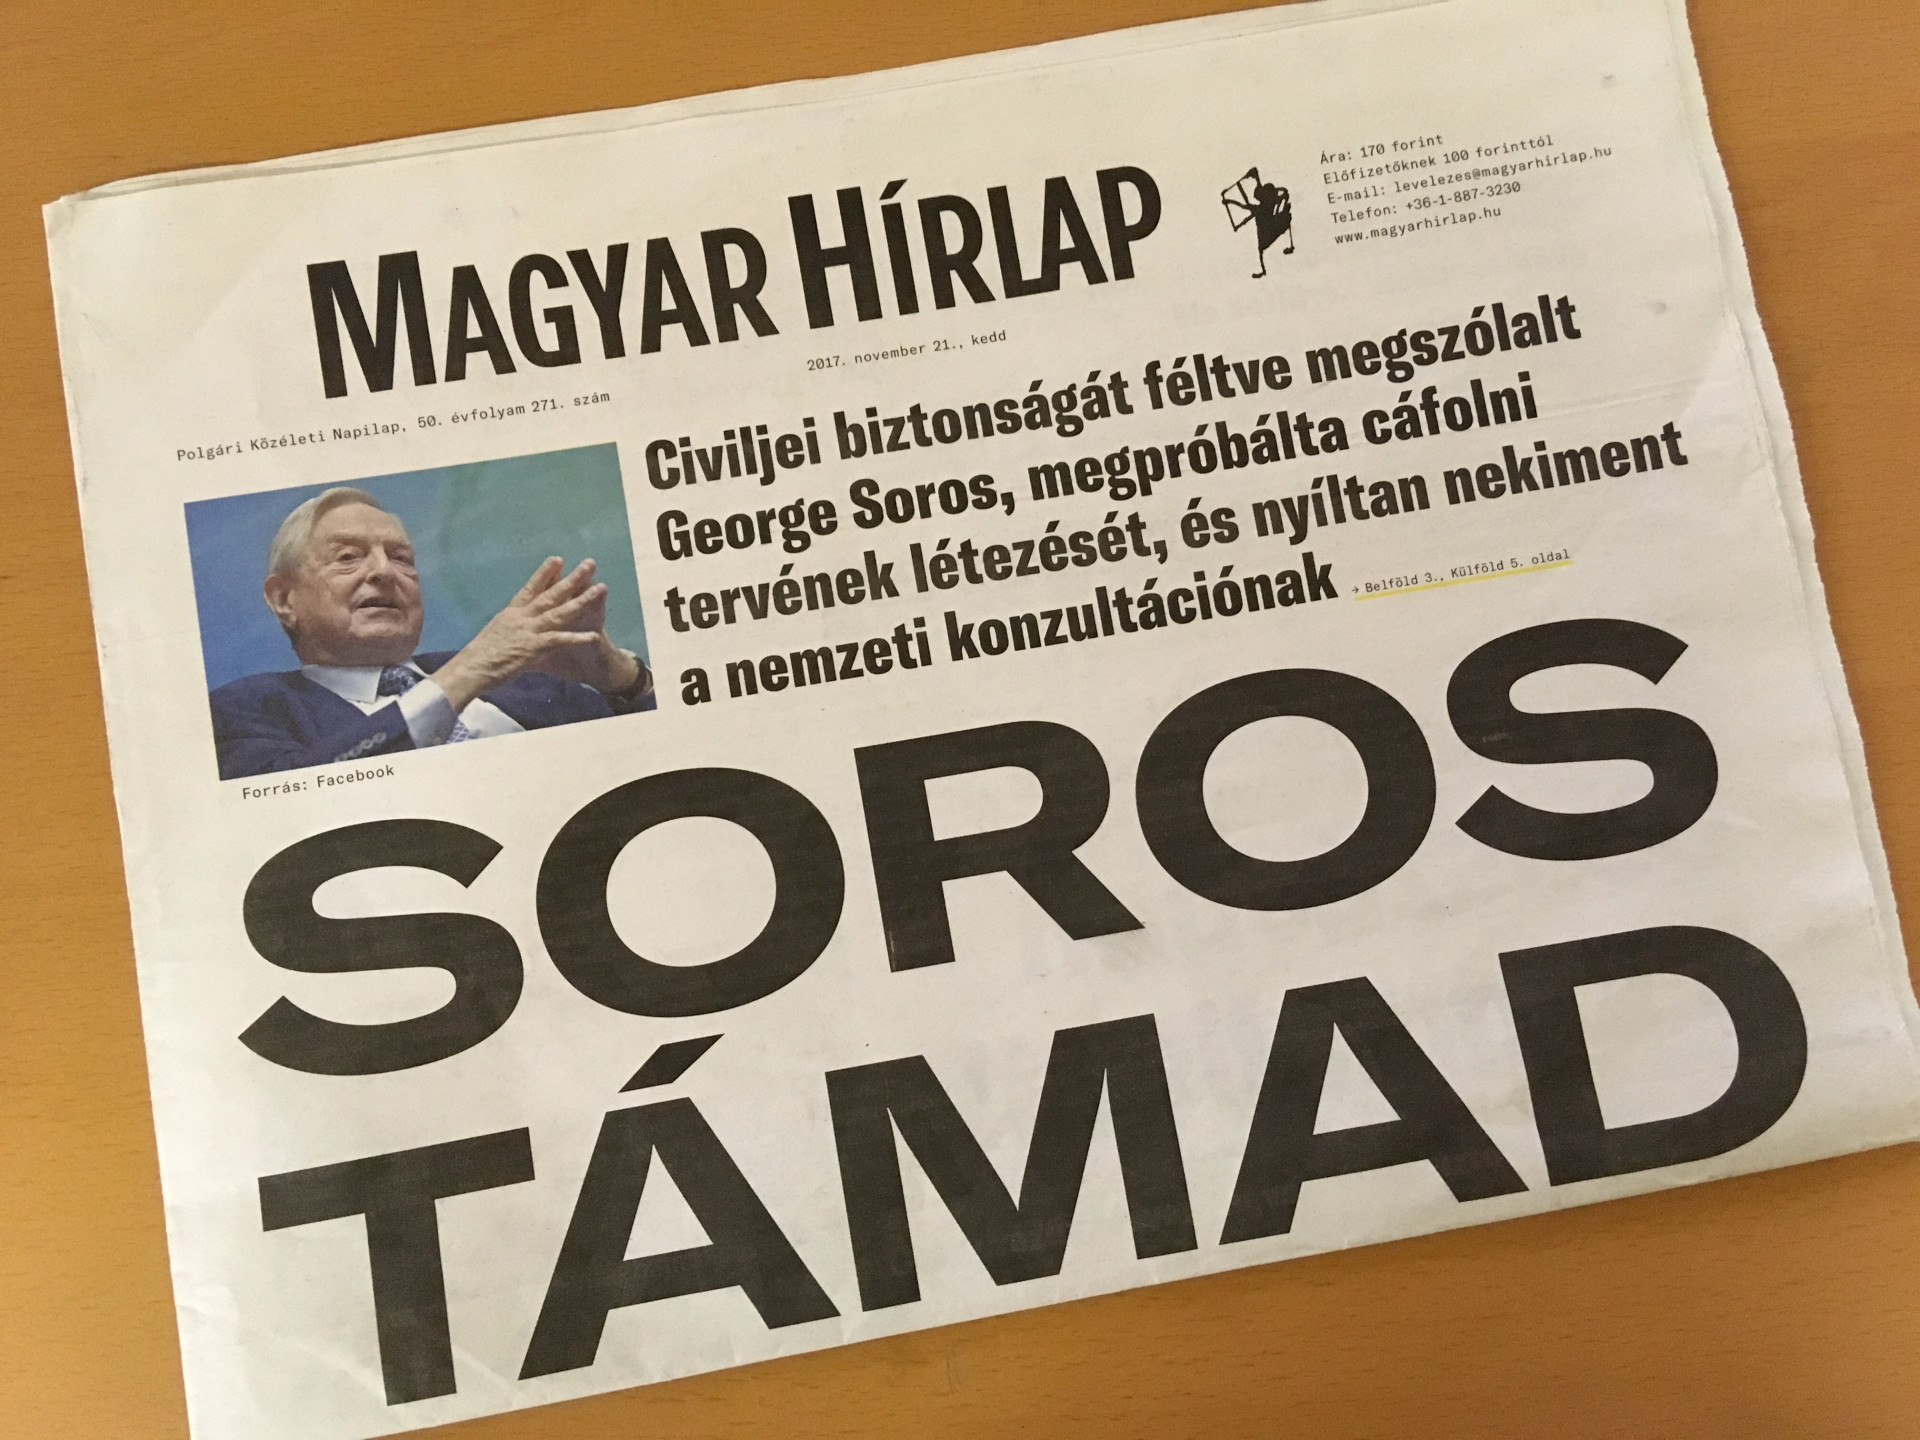 Rasszizmus miatt büntették meg a Magyar Hírlapot